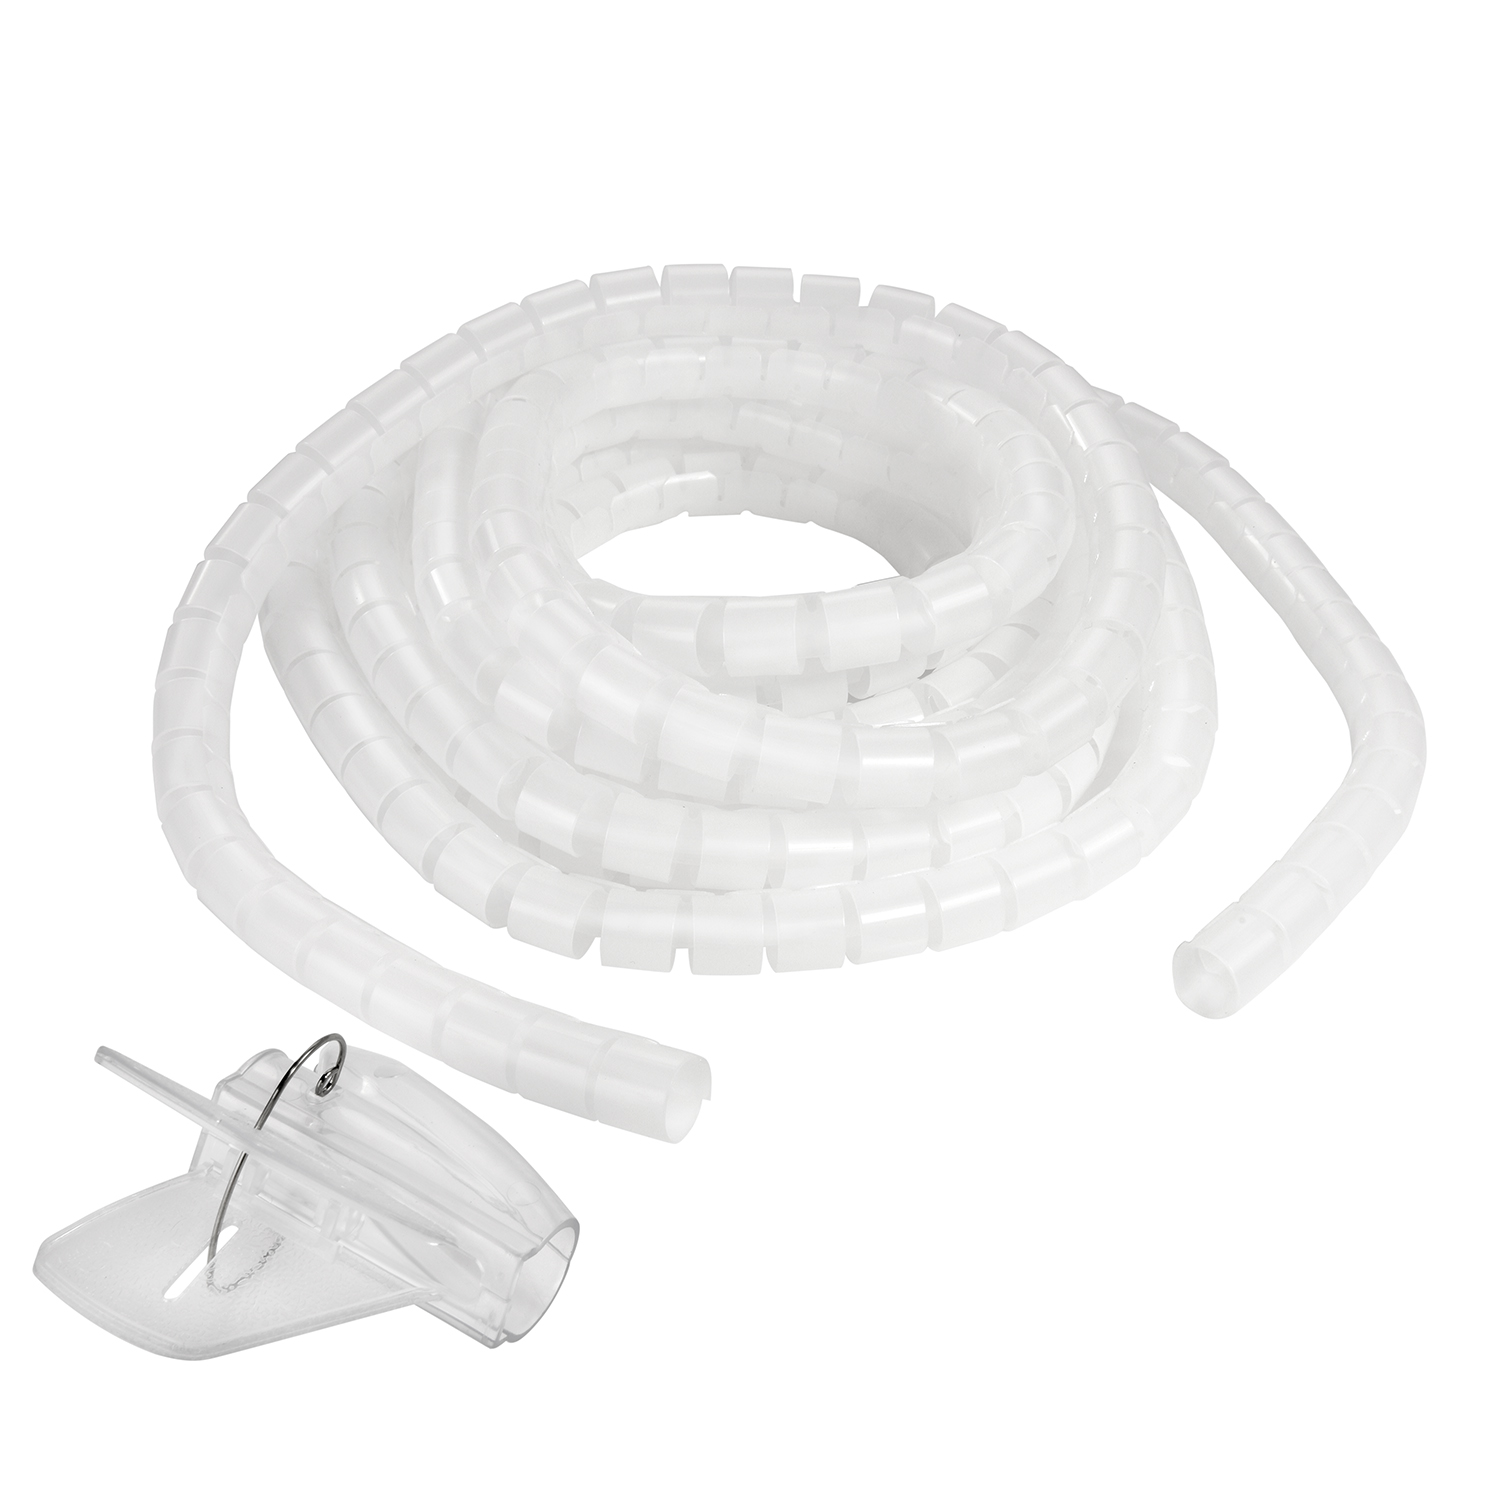 Spiral-Kabelschlauch mit Einfädelhilfe, Transparent, 2m TPFNET Transparent 20mm, Kabelschlauch, Premium